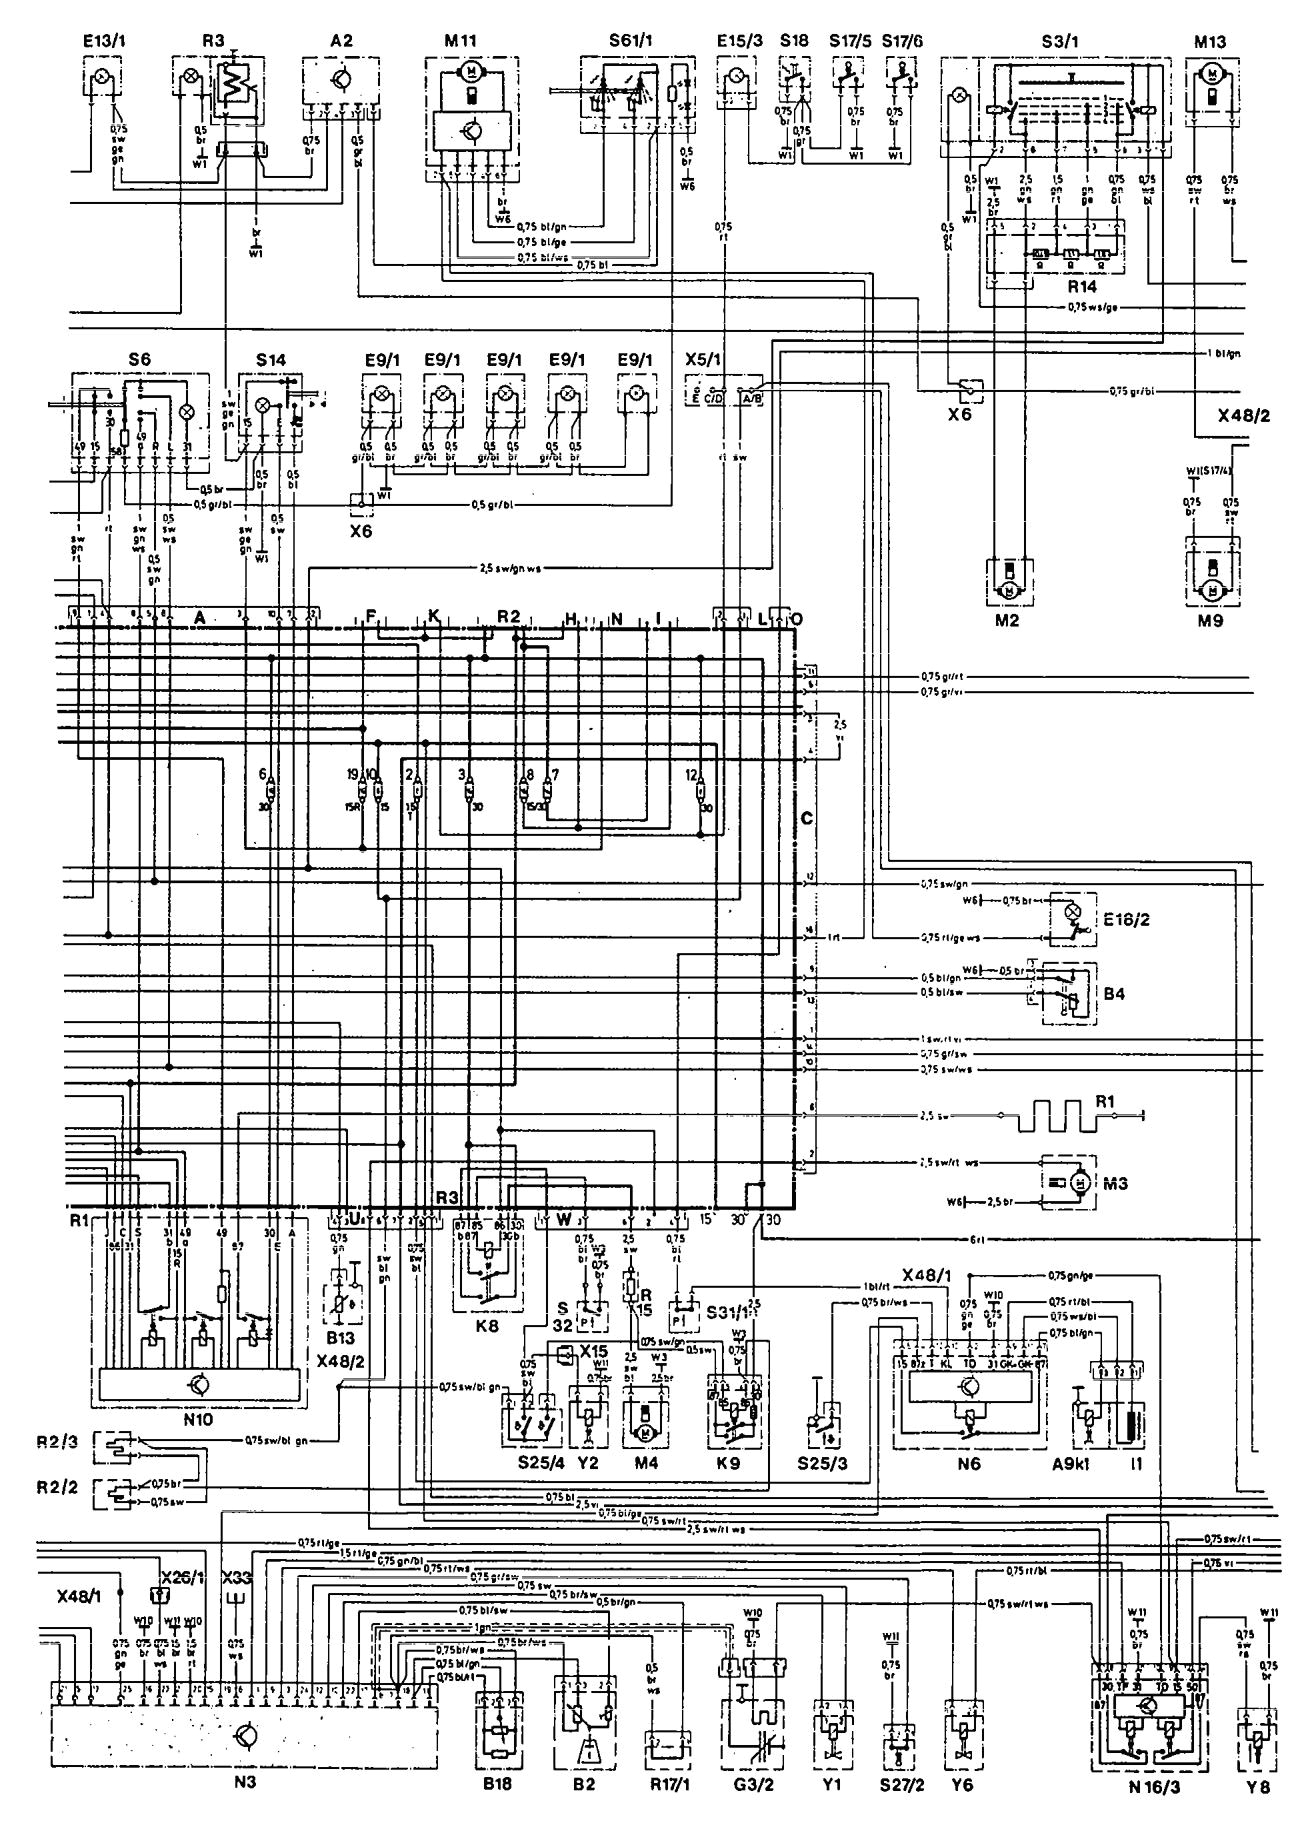 w201 engine wiring diagram wiring diagram blog w201 engine wiring diagram